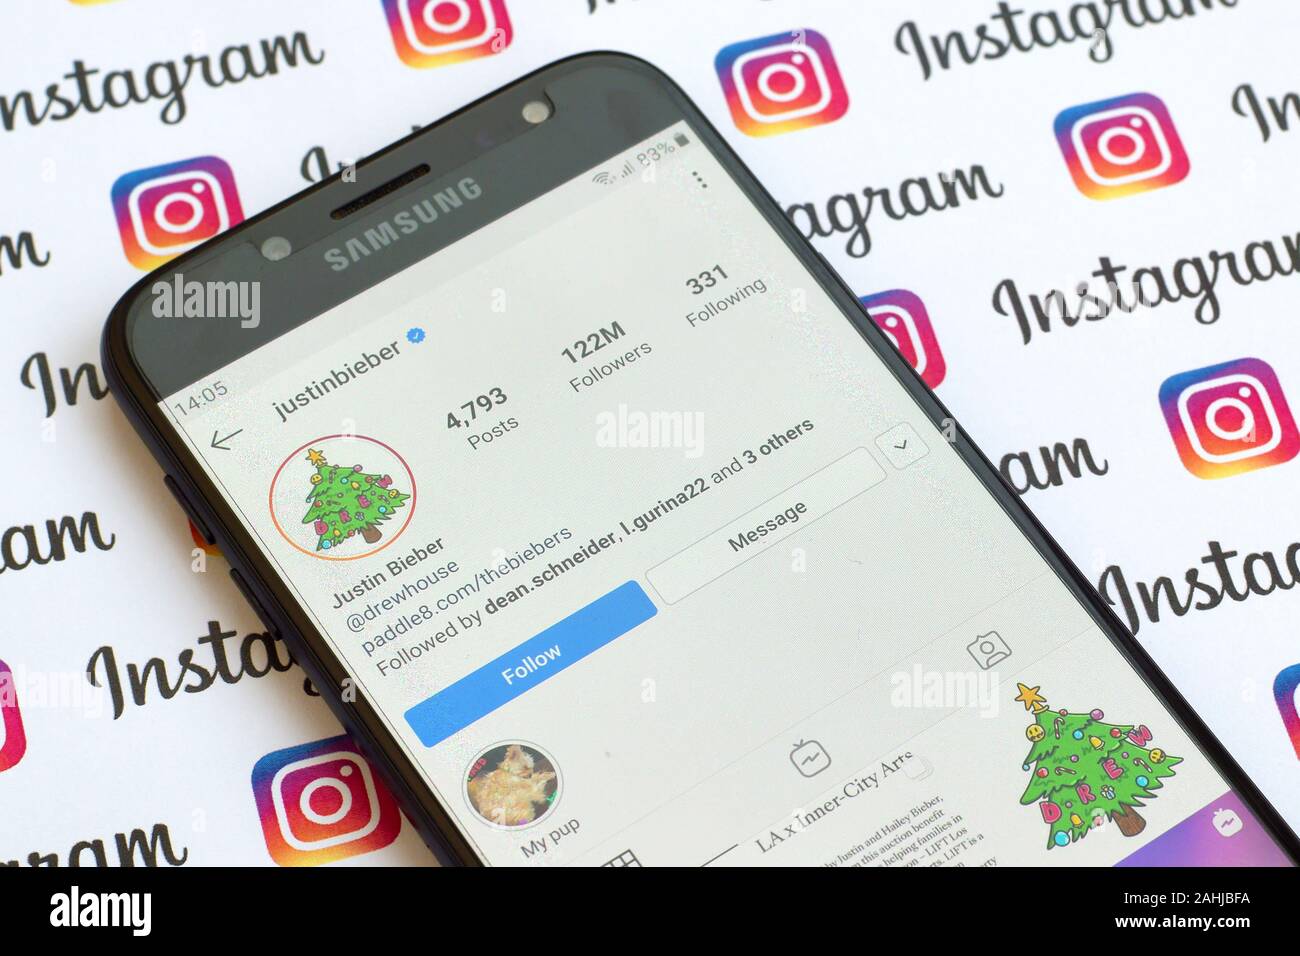 NY, USA - 4 décembre 2019 : Justin Bieber compte instagram officiel sur l'écran du smartphone sur le papier bannière instagram. Banque D'Images